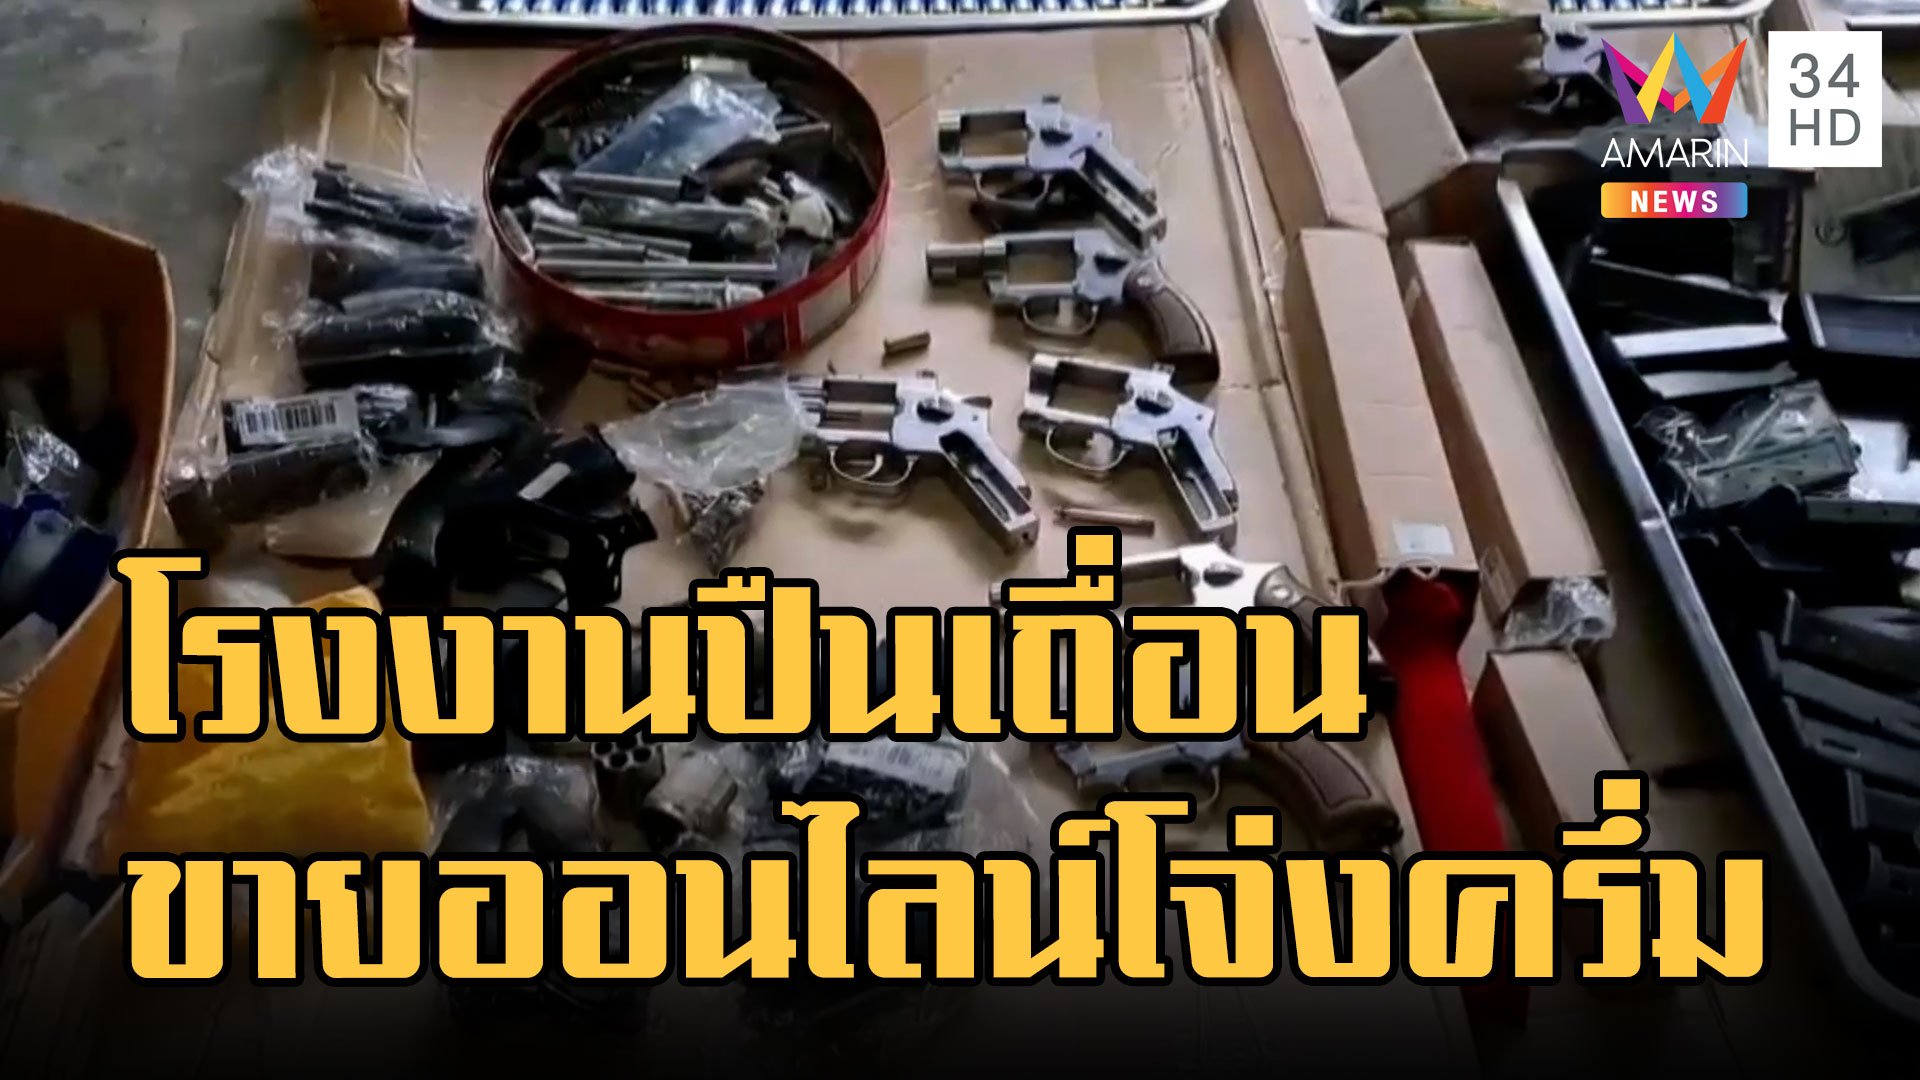 บุกทลายโรงงานปืนเถื่อน ขายออนไลน์โจ่งครึ่ม | ข่าวอรุณอมรินทร์ | 8 ก.ย. 65 | AMARIN TVHD34